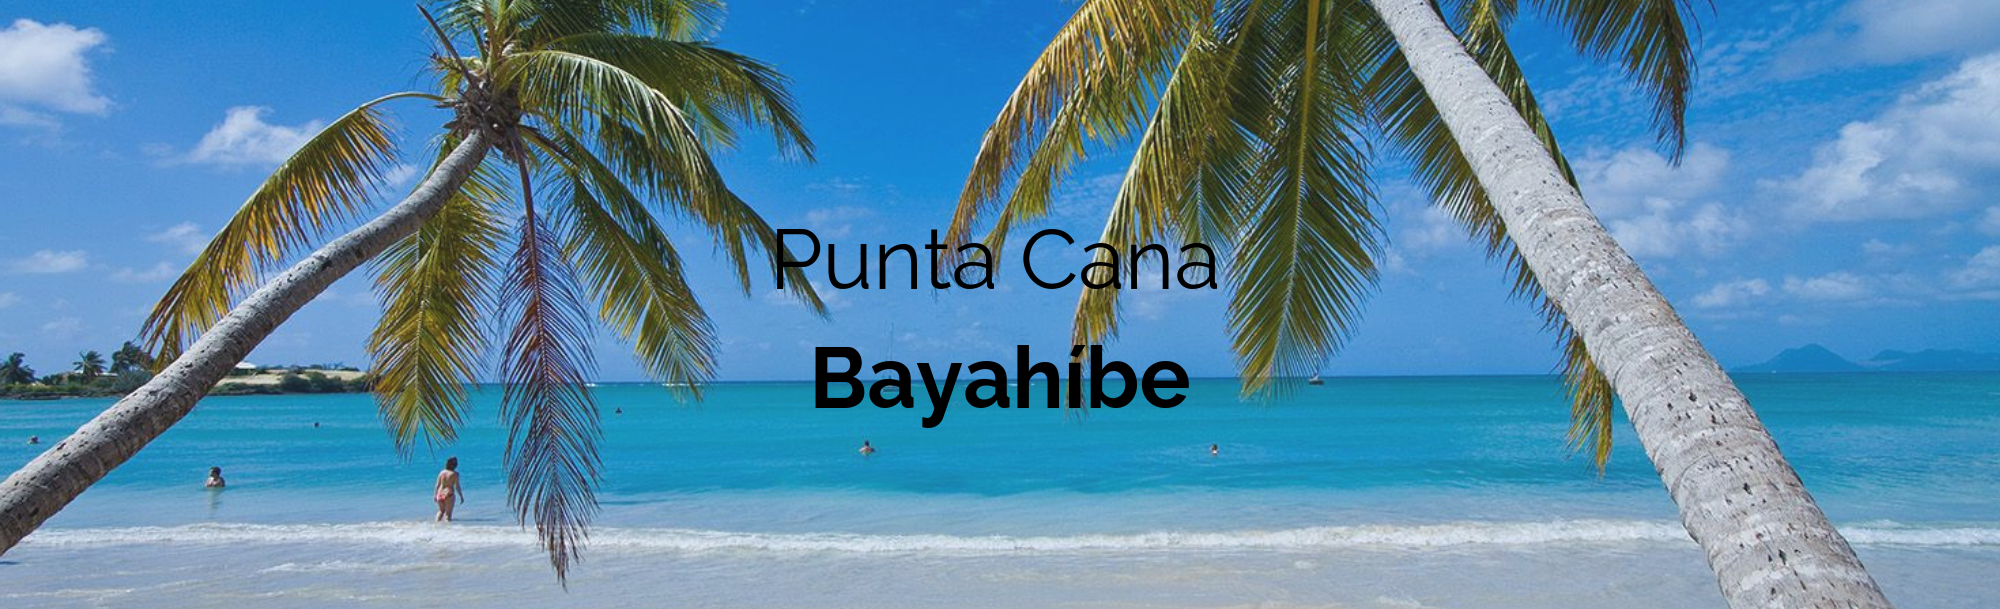 Punta Cana y Bayahíbe